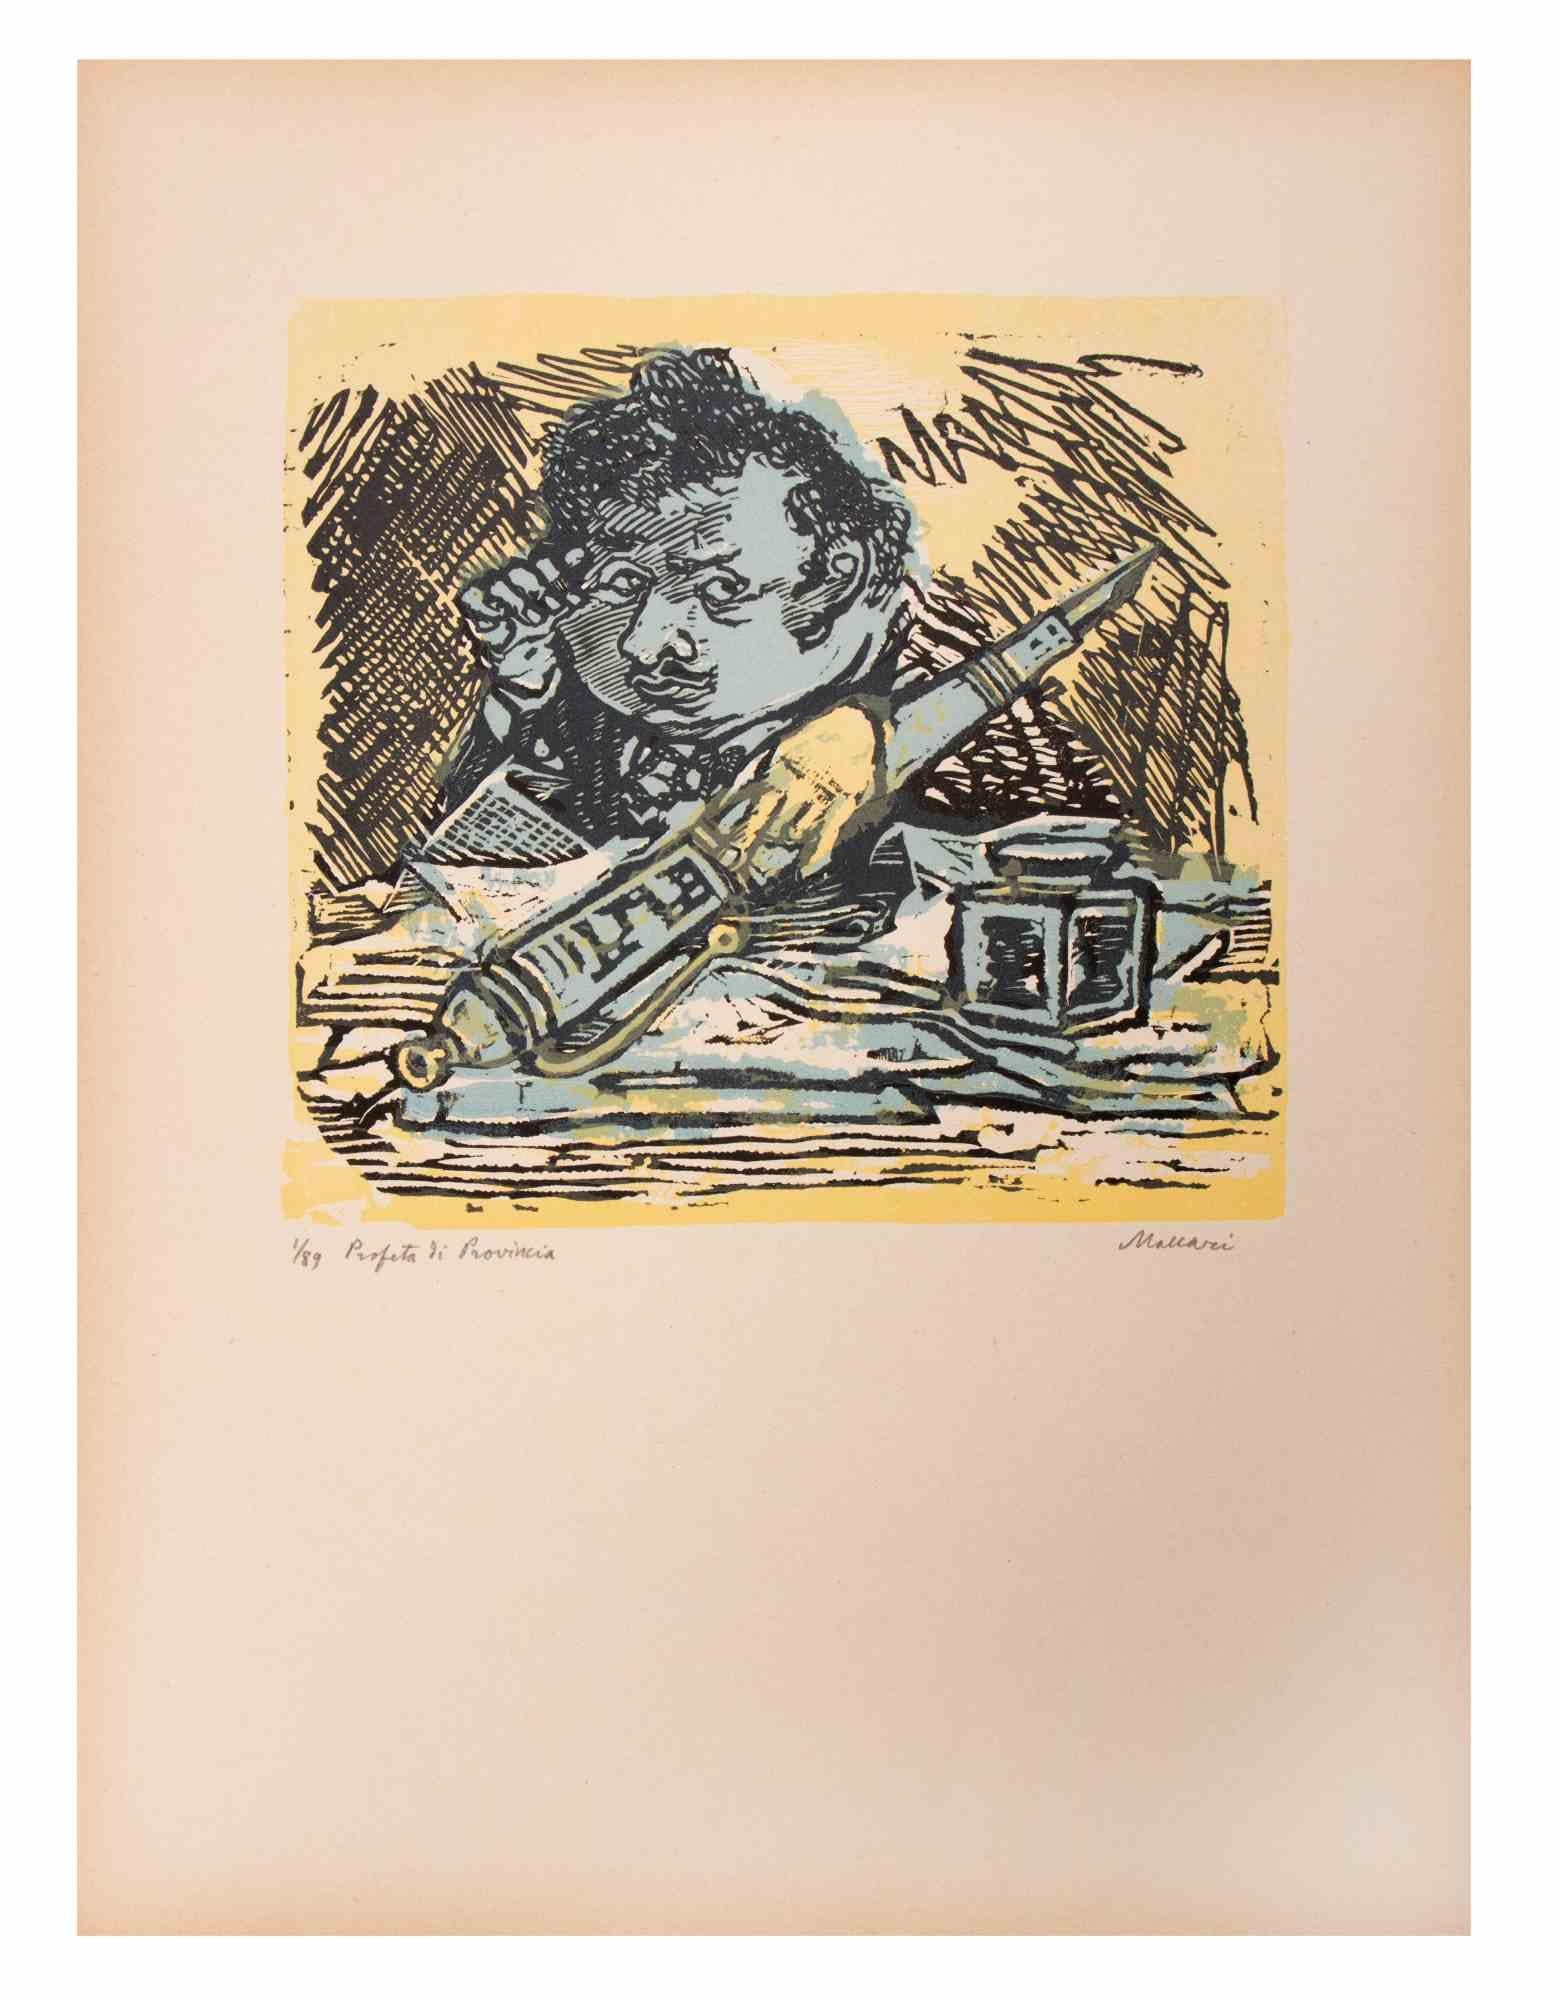 Provincial Predictor (Profeta di Provincia) ist ein Kunstwerk von Mino Maccari (1924-1989) aus der Mitte des 20. Jahrhunderts.

Farbiger Holzschnitt auf Papier. Unten handsigniert, nummeriert 1/89 Exemplare und am linken Rand betitelt.

Gute